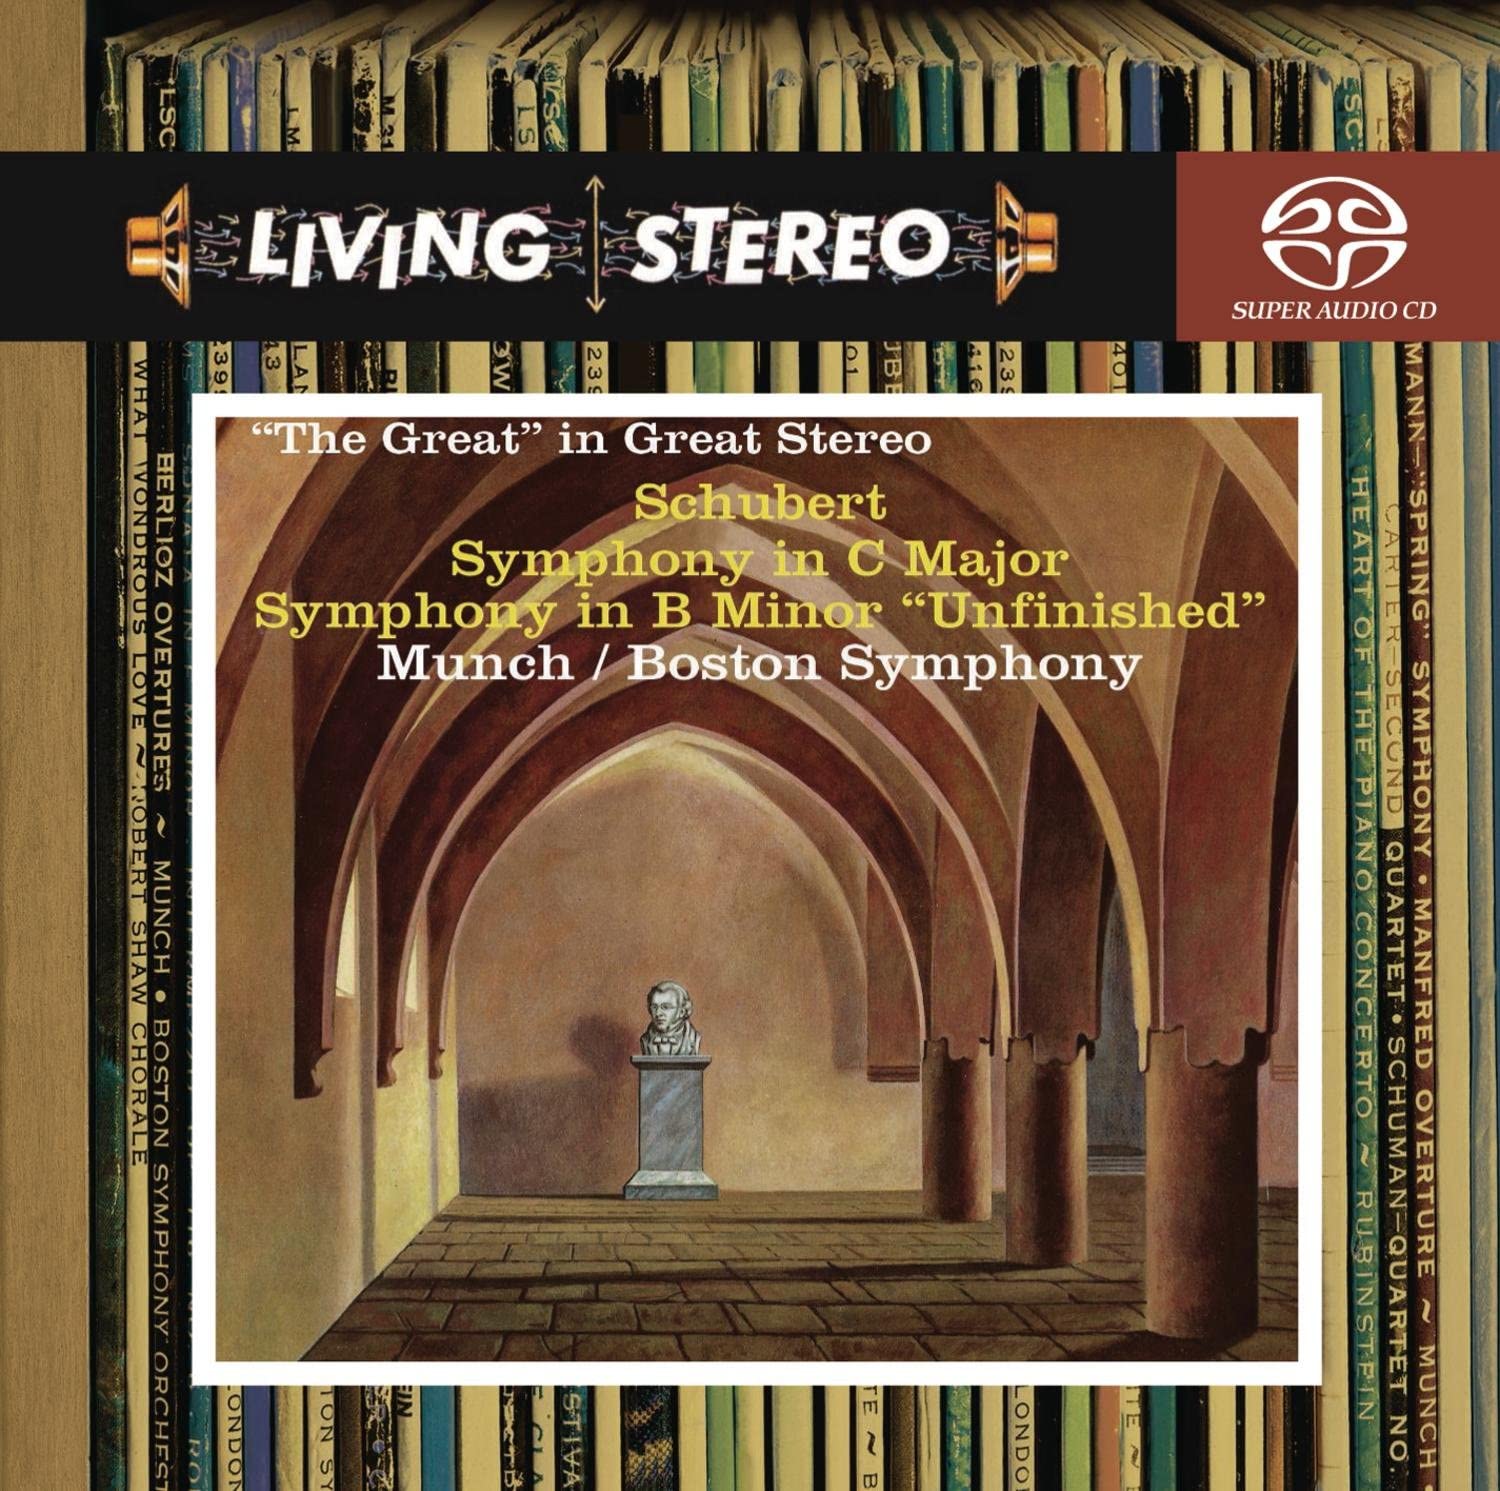 Schubert - Symphonies 8 & 9, BSO, Munch - 24-44.1